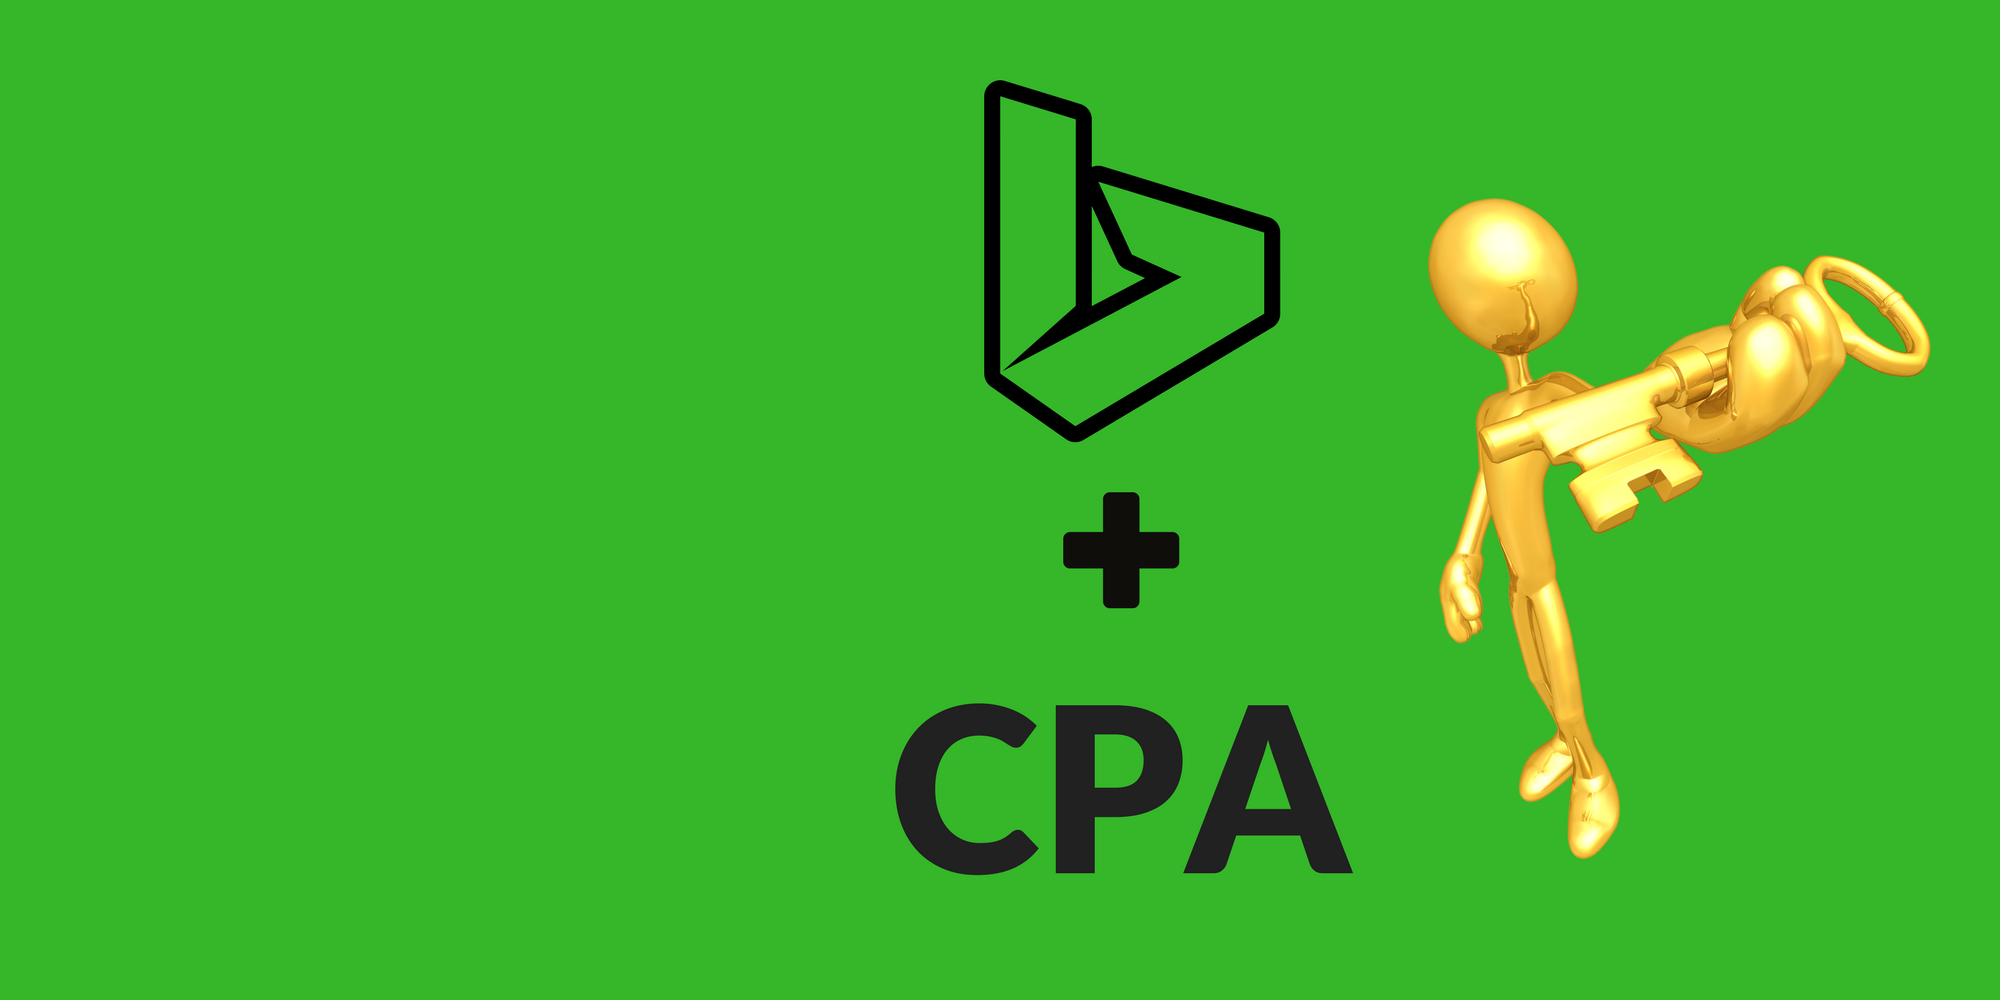 Cpa в маркетинге. CPA партнерки. Сра формула маркетинг. CPA формула. CPA модель.